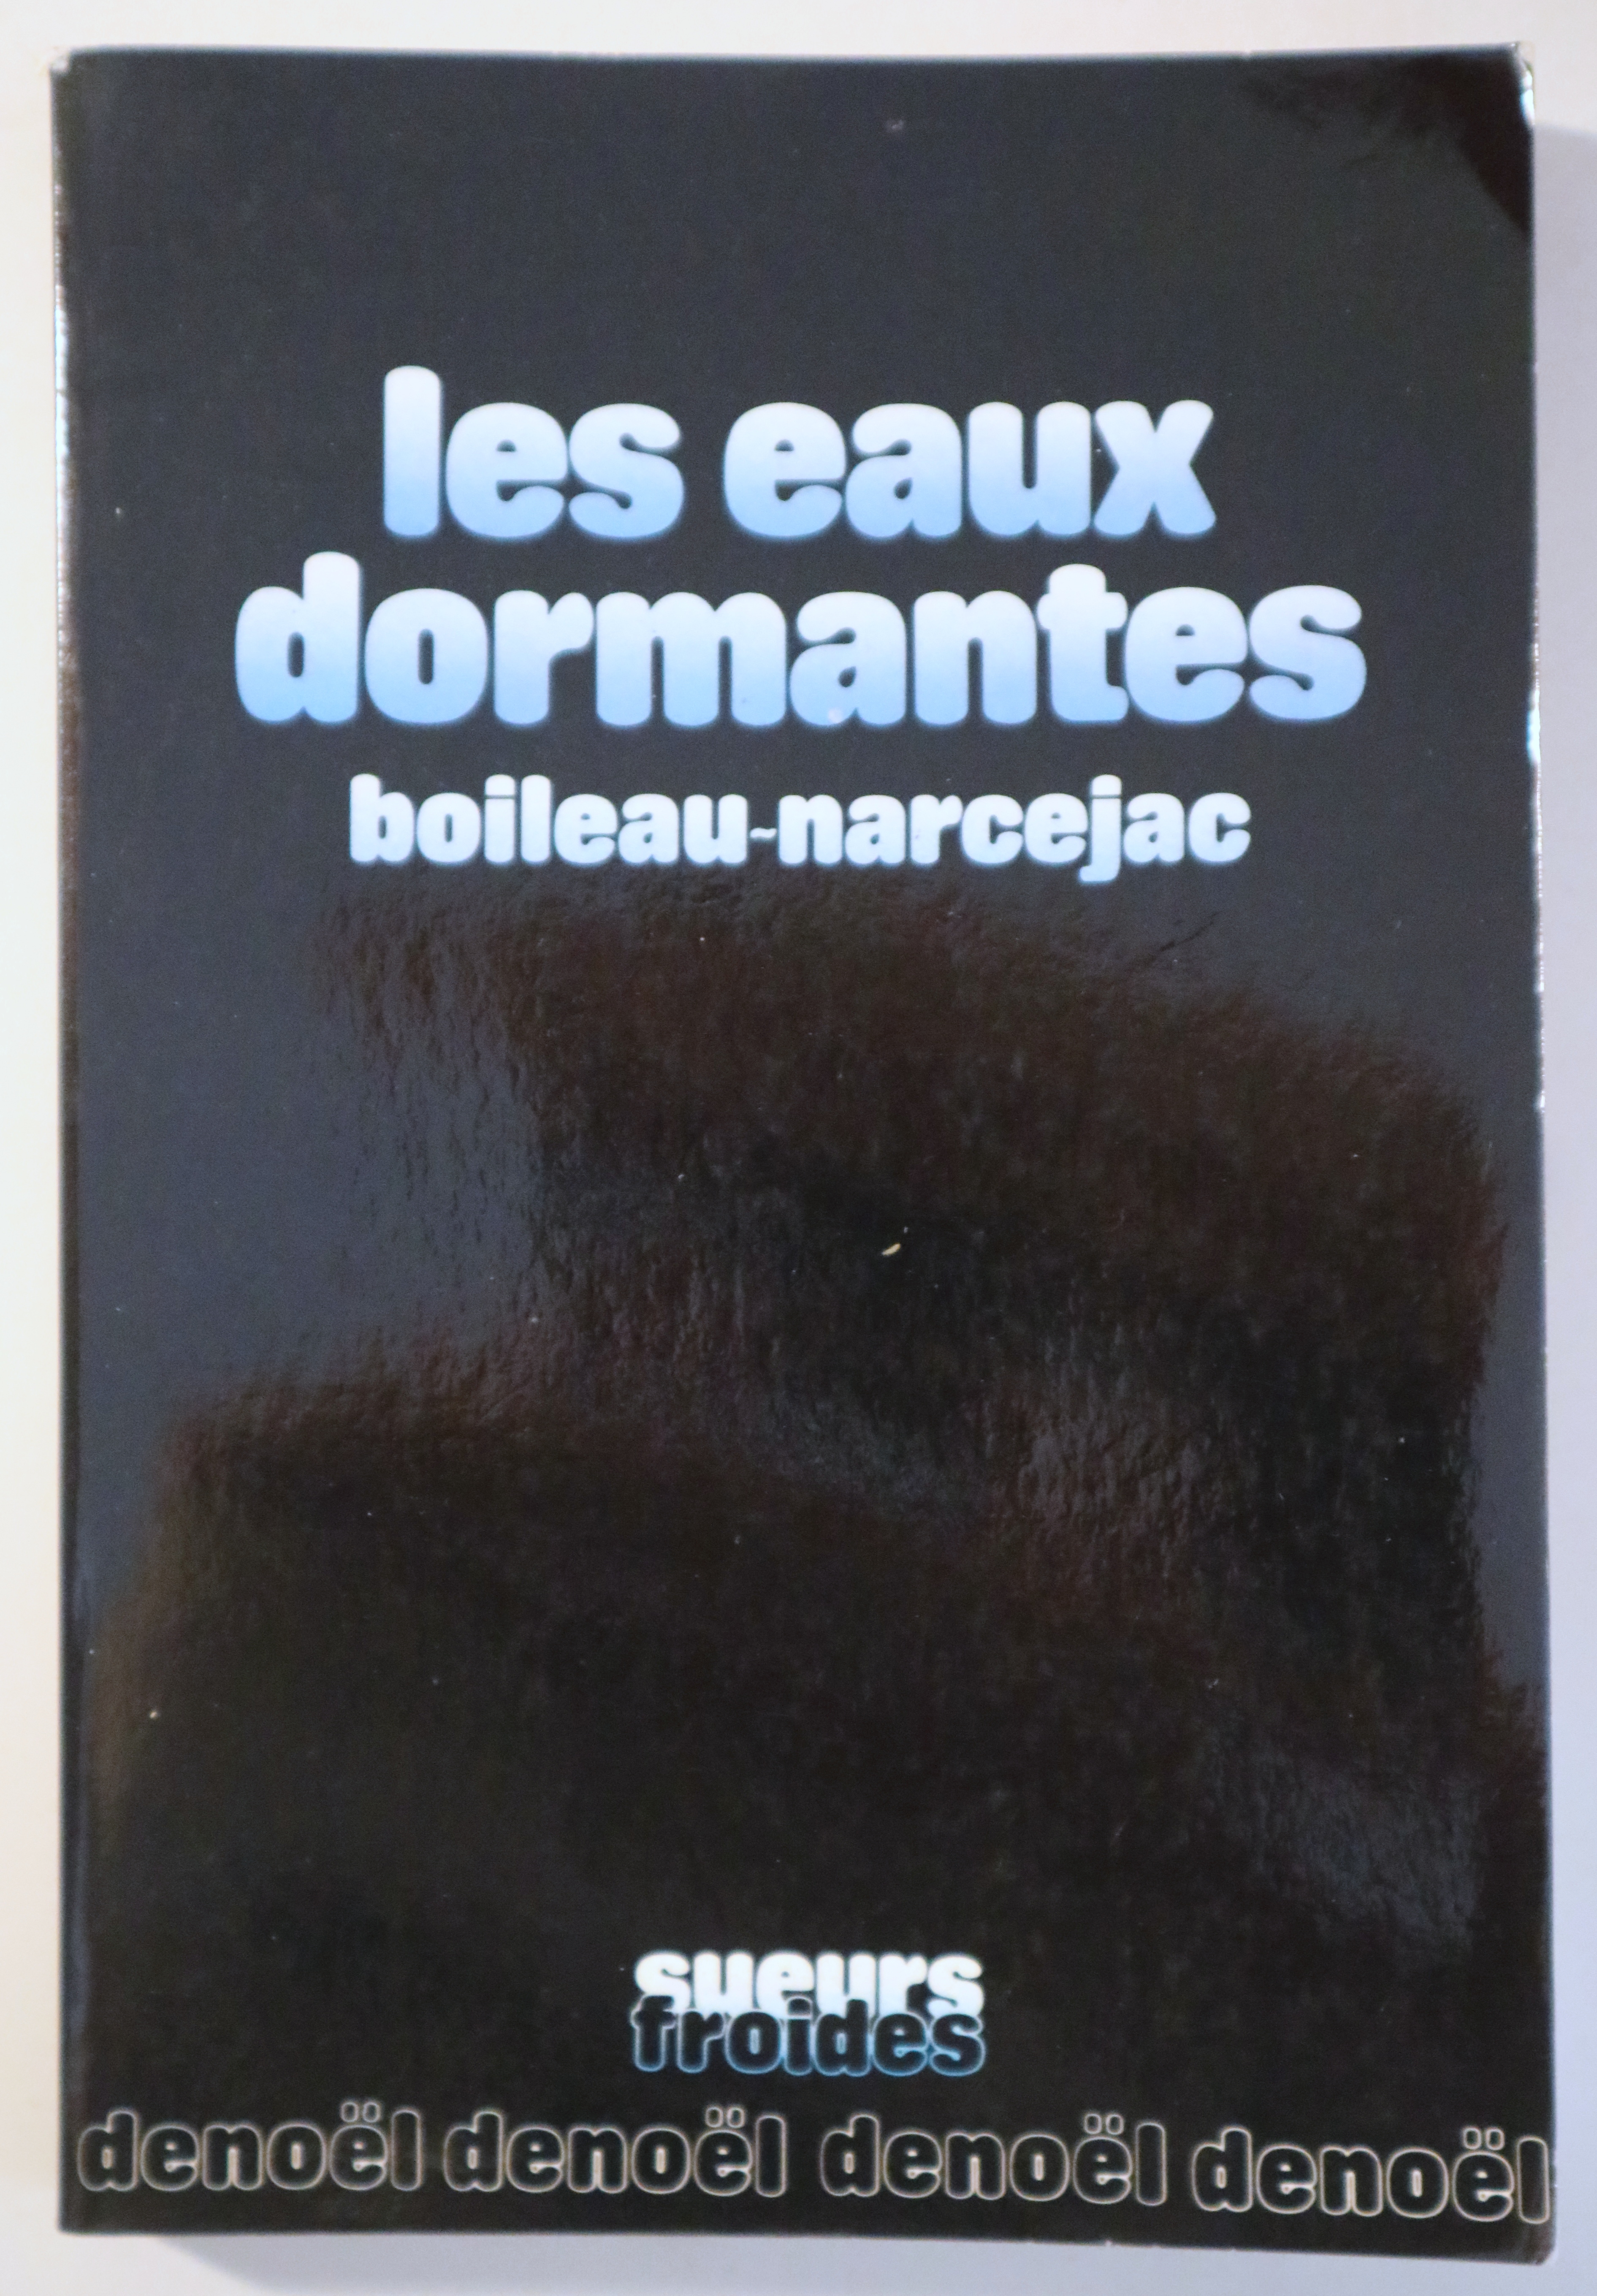 LES EAUX DORMANTES - Paris 1983